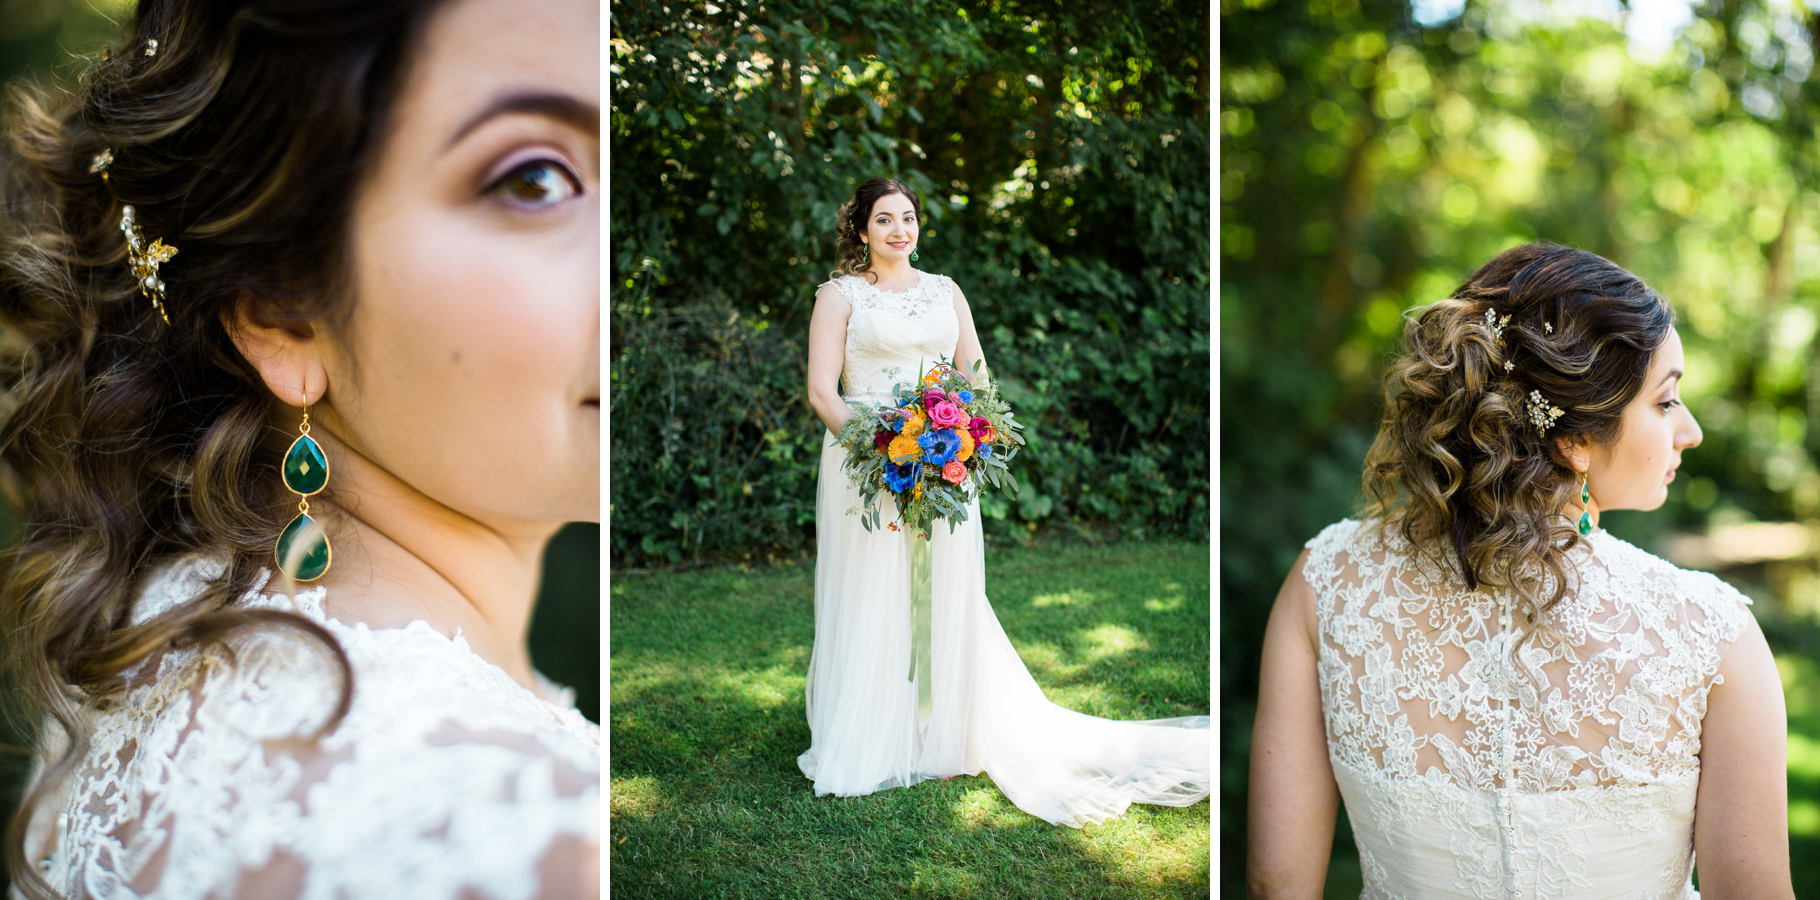 21-bridal-portraits-lace-dress-vibrant-colorful-bouquet-edmonds-seattle-wedding-photographer.jpg